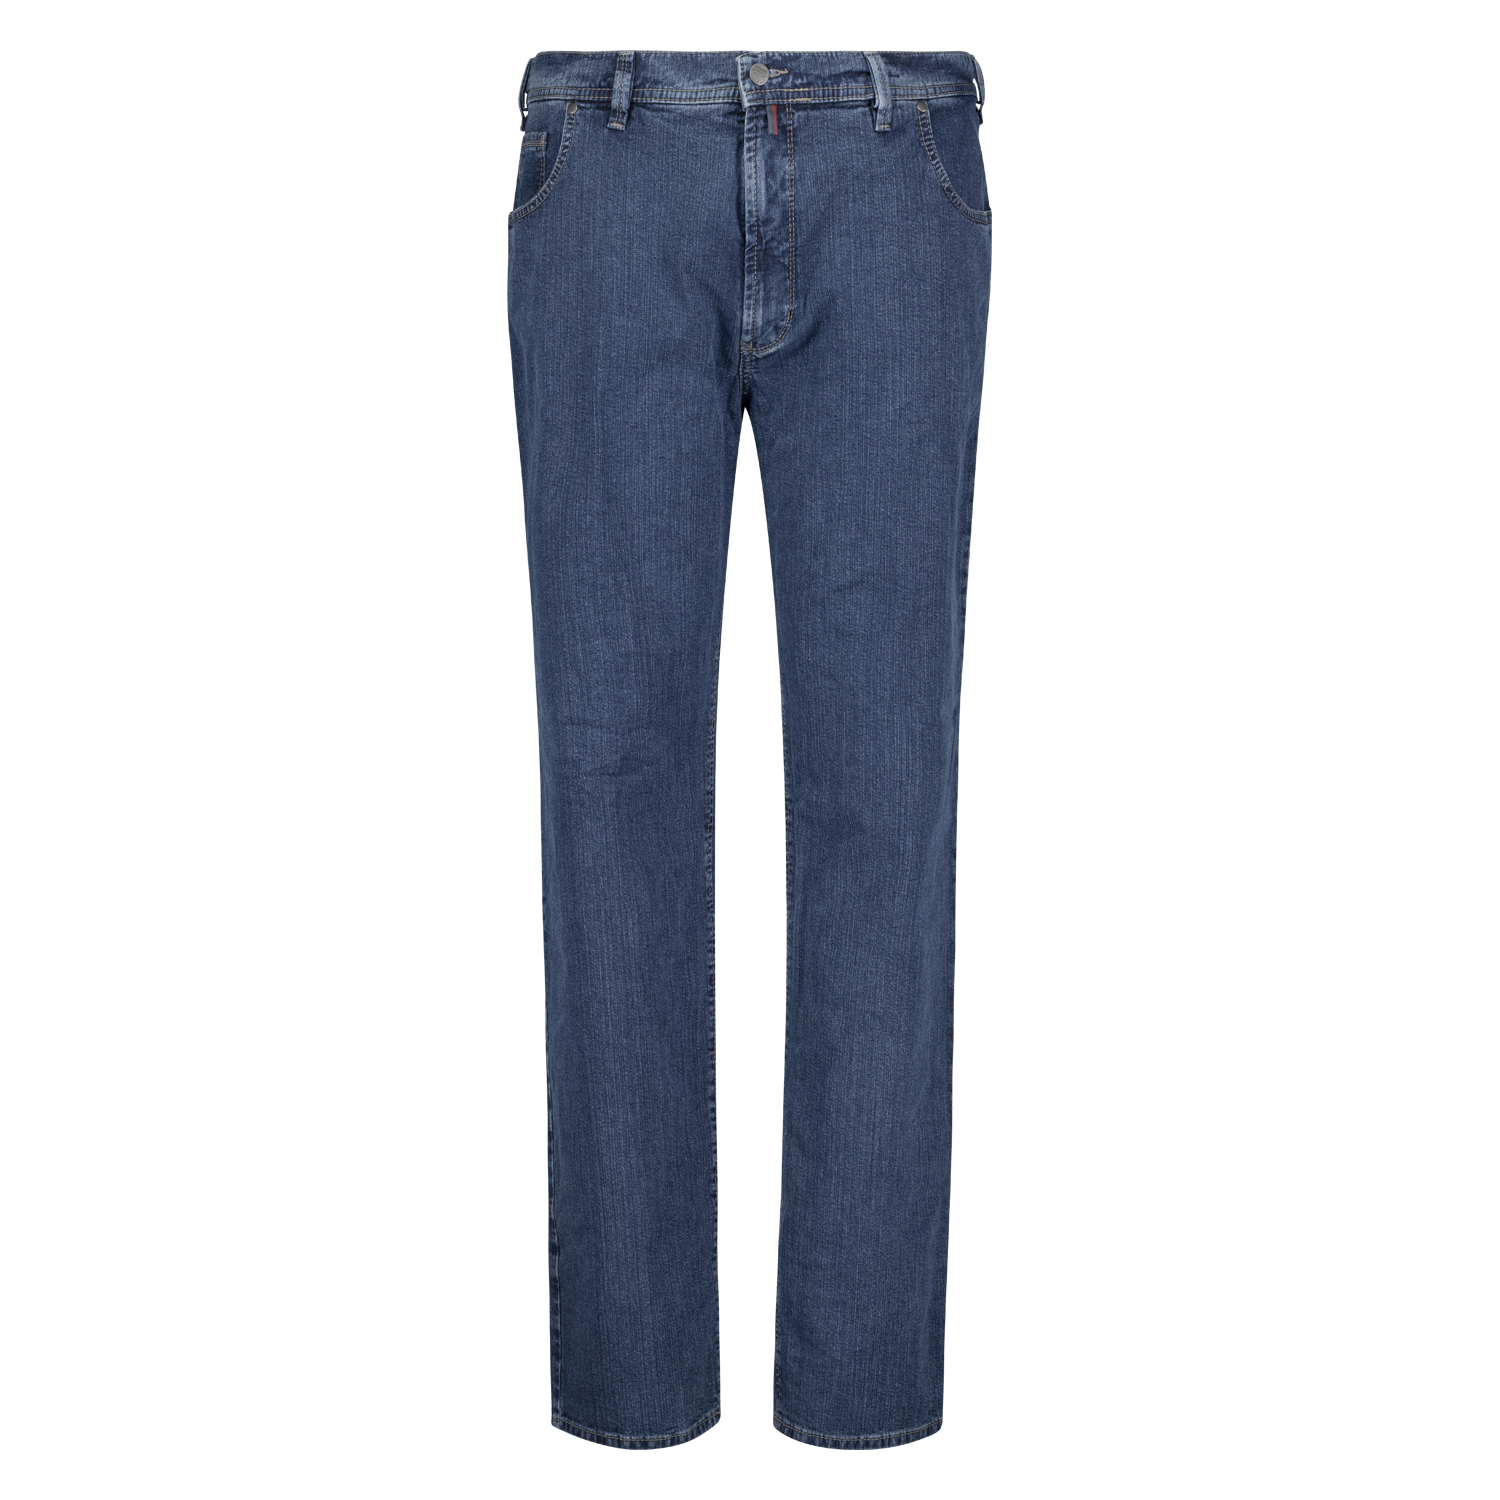 Herren Five Pocket Jeans Modell "Peter" von Pioneer Normalgrößen 56 - 74 blue stonewash